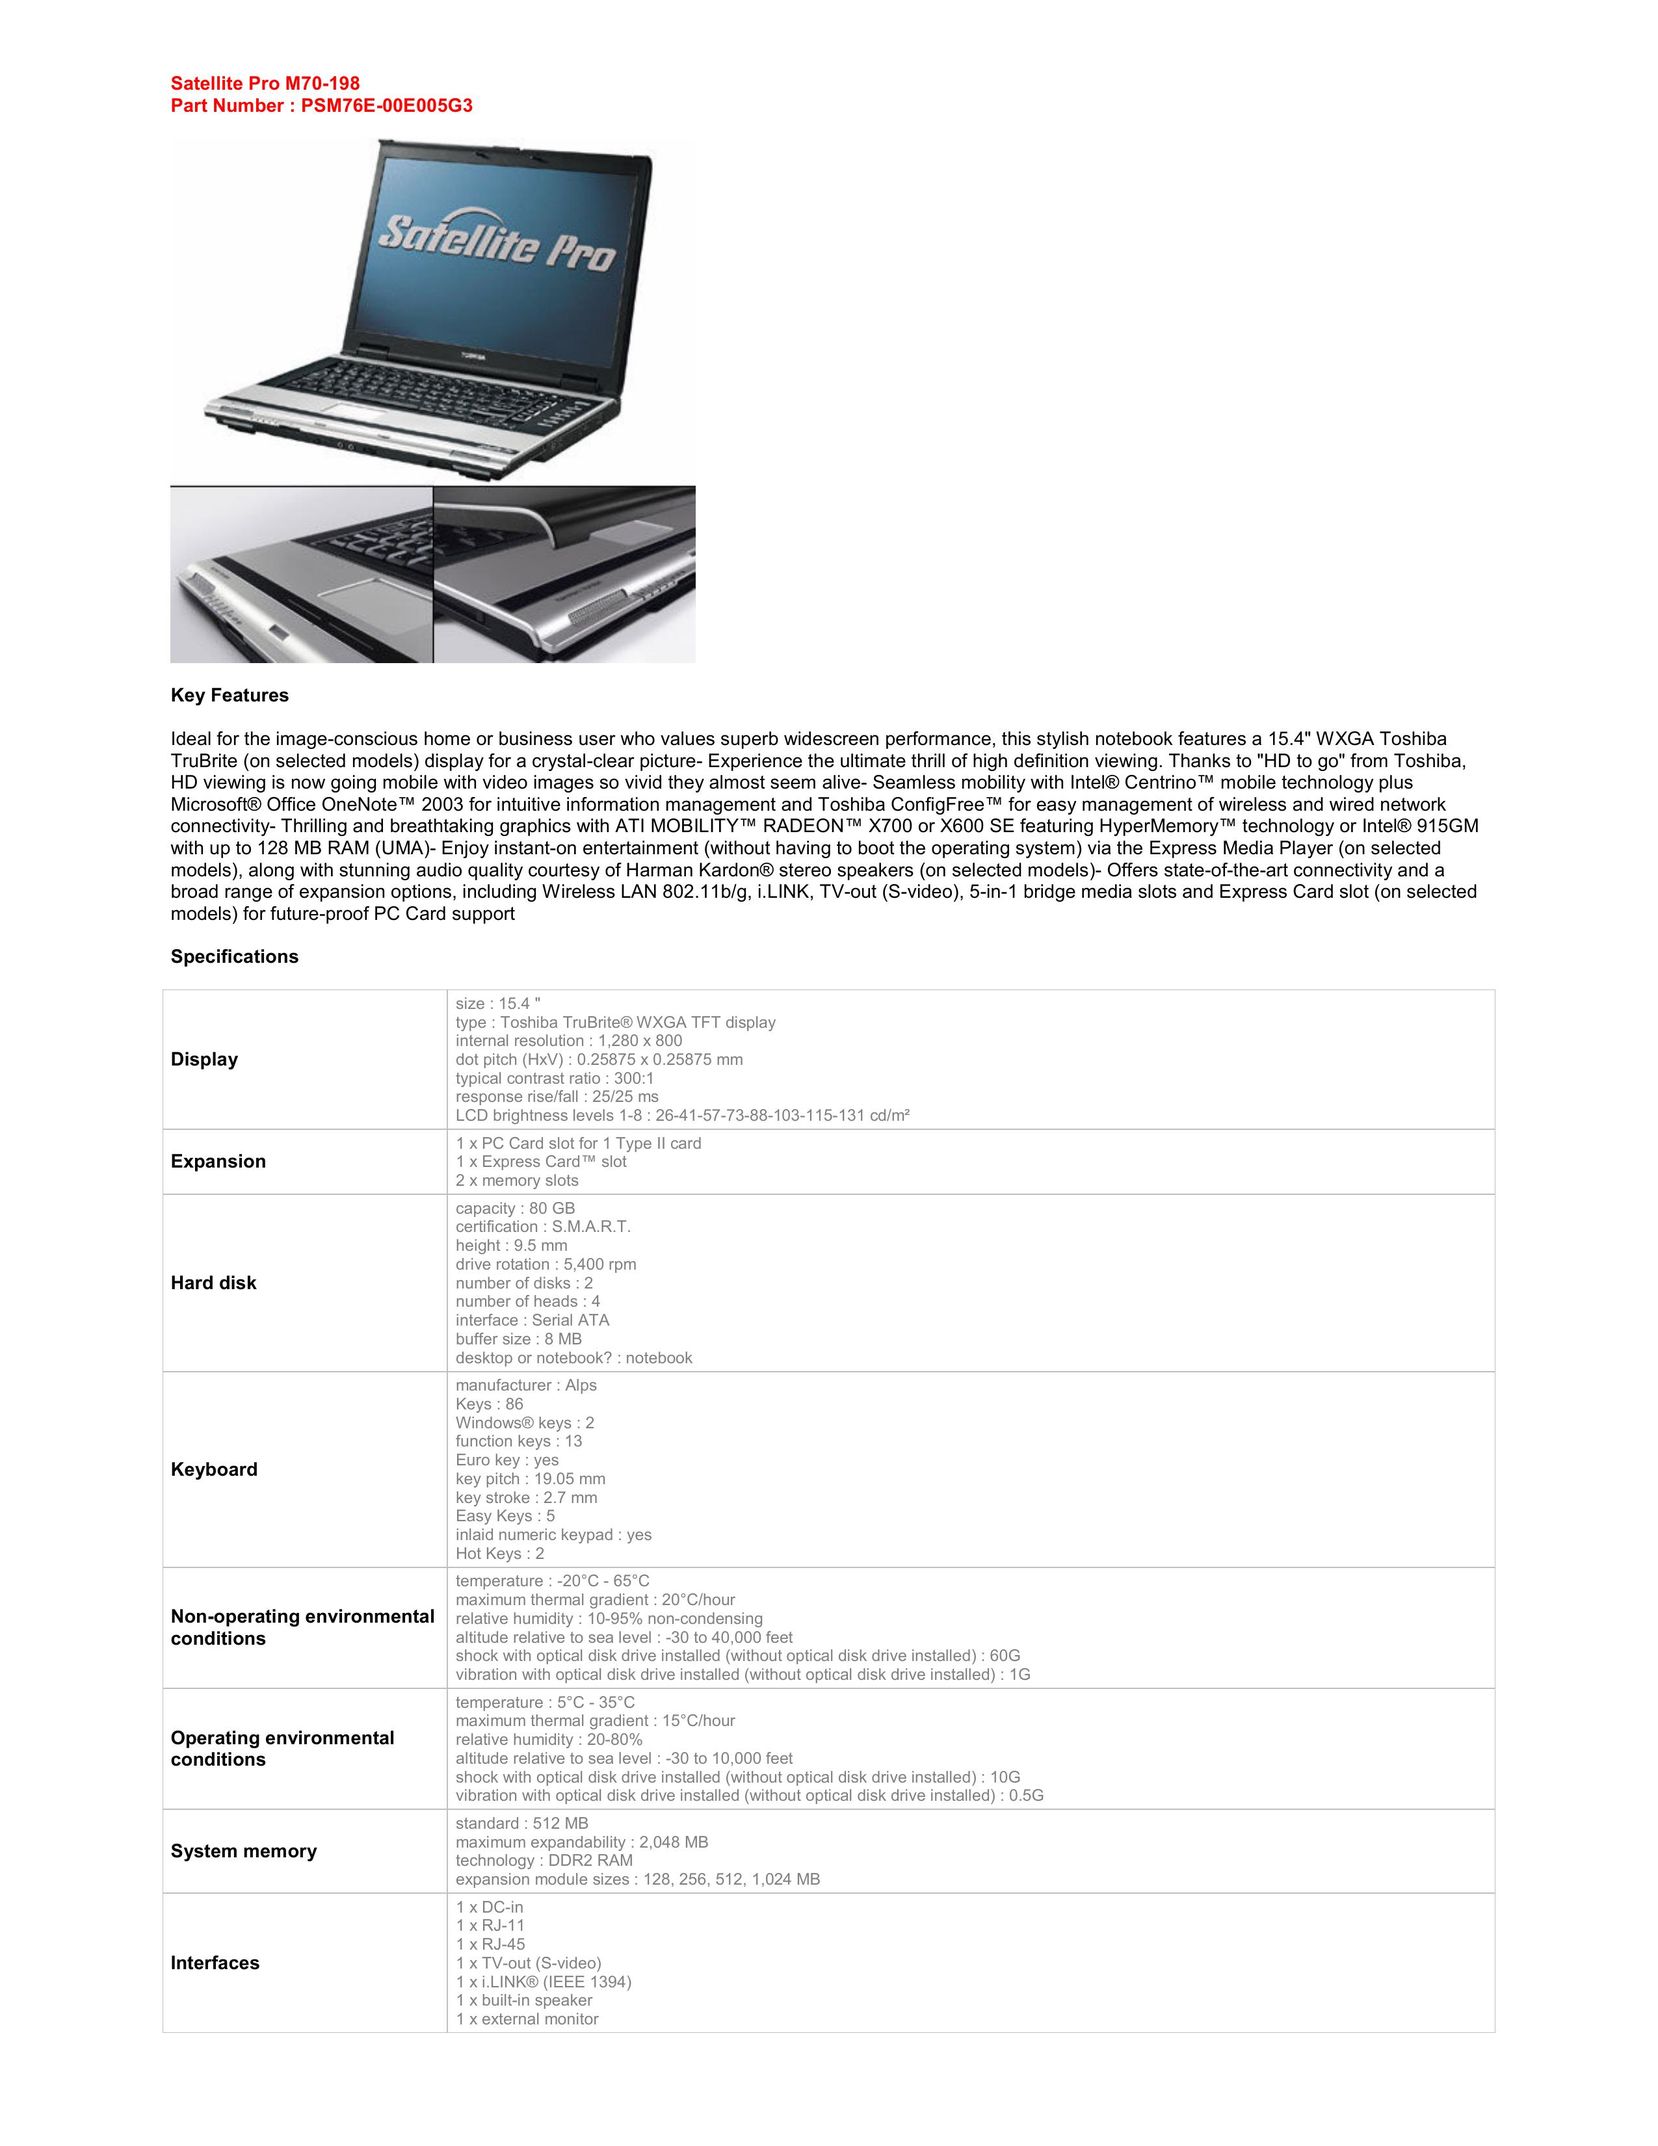 Harman-Kardon M70-198 Laptop User Manual (Page 1)